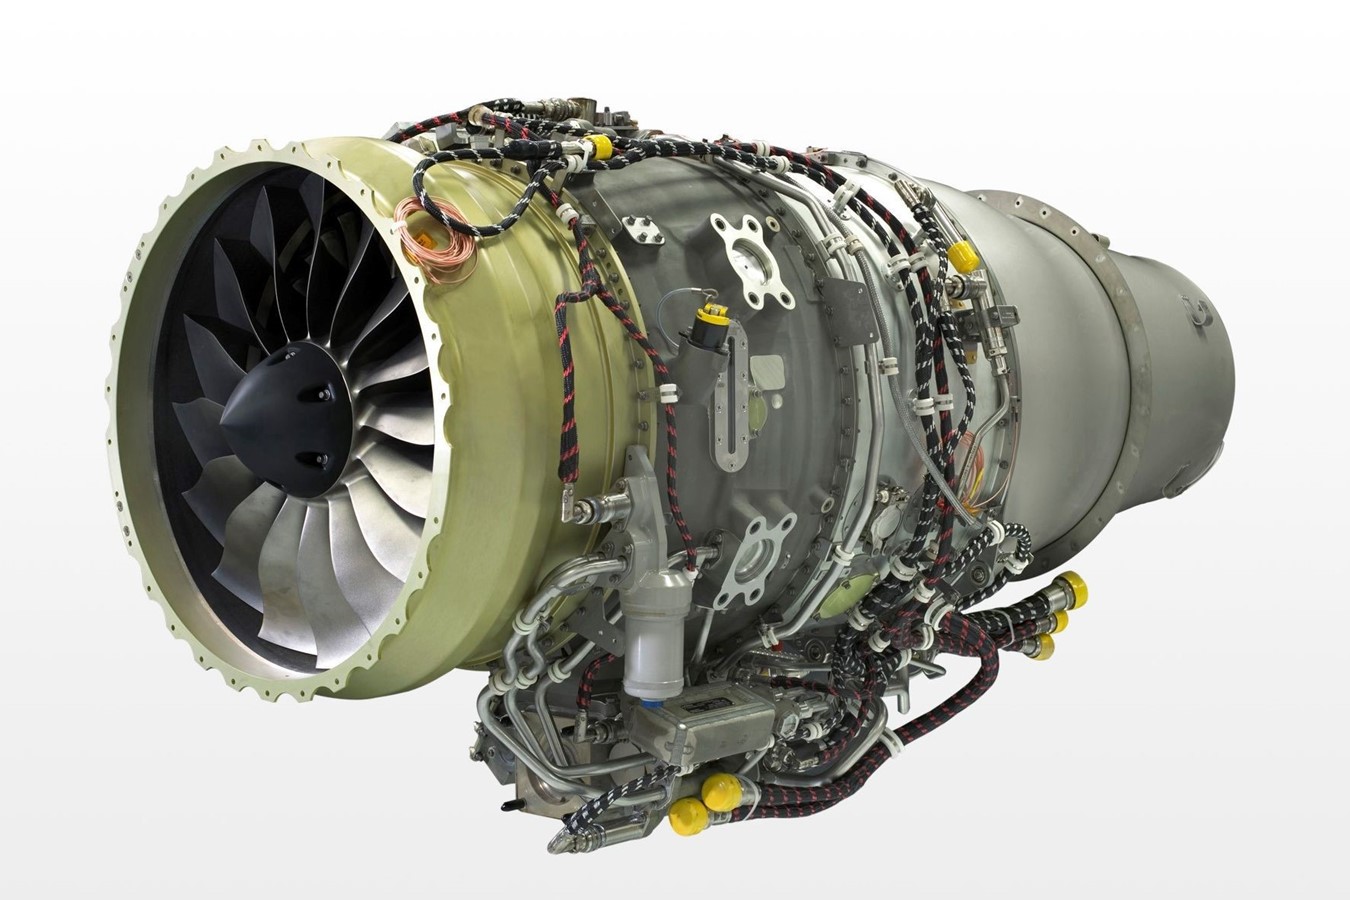 EBACE Genf: HF120 Triebwerk von GE Honda Aero Engines erhält EASA-Zulassung